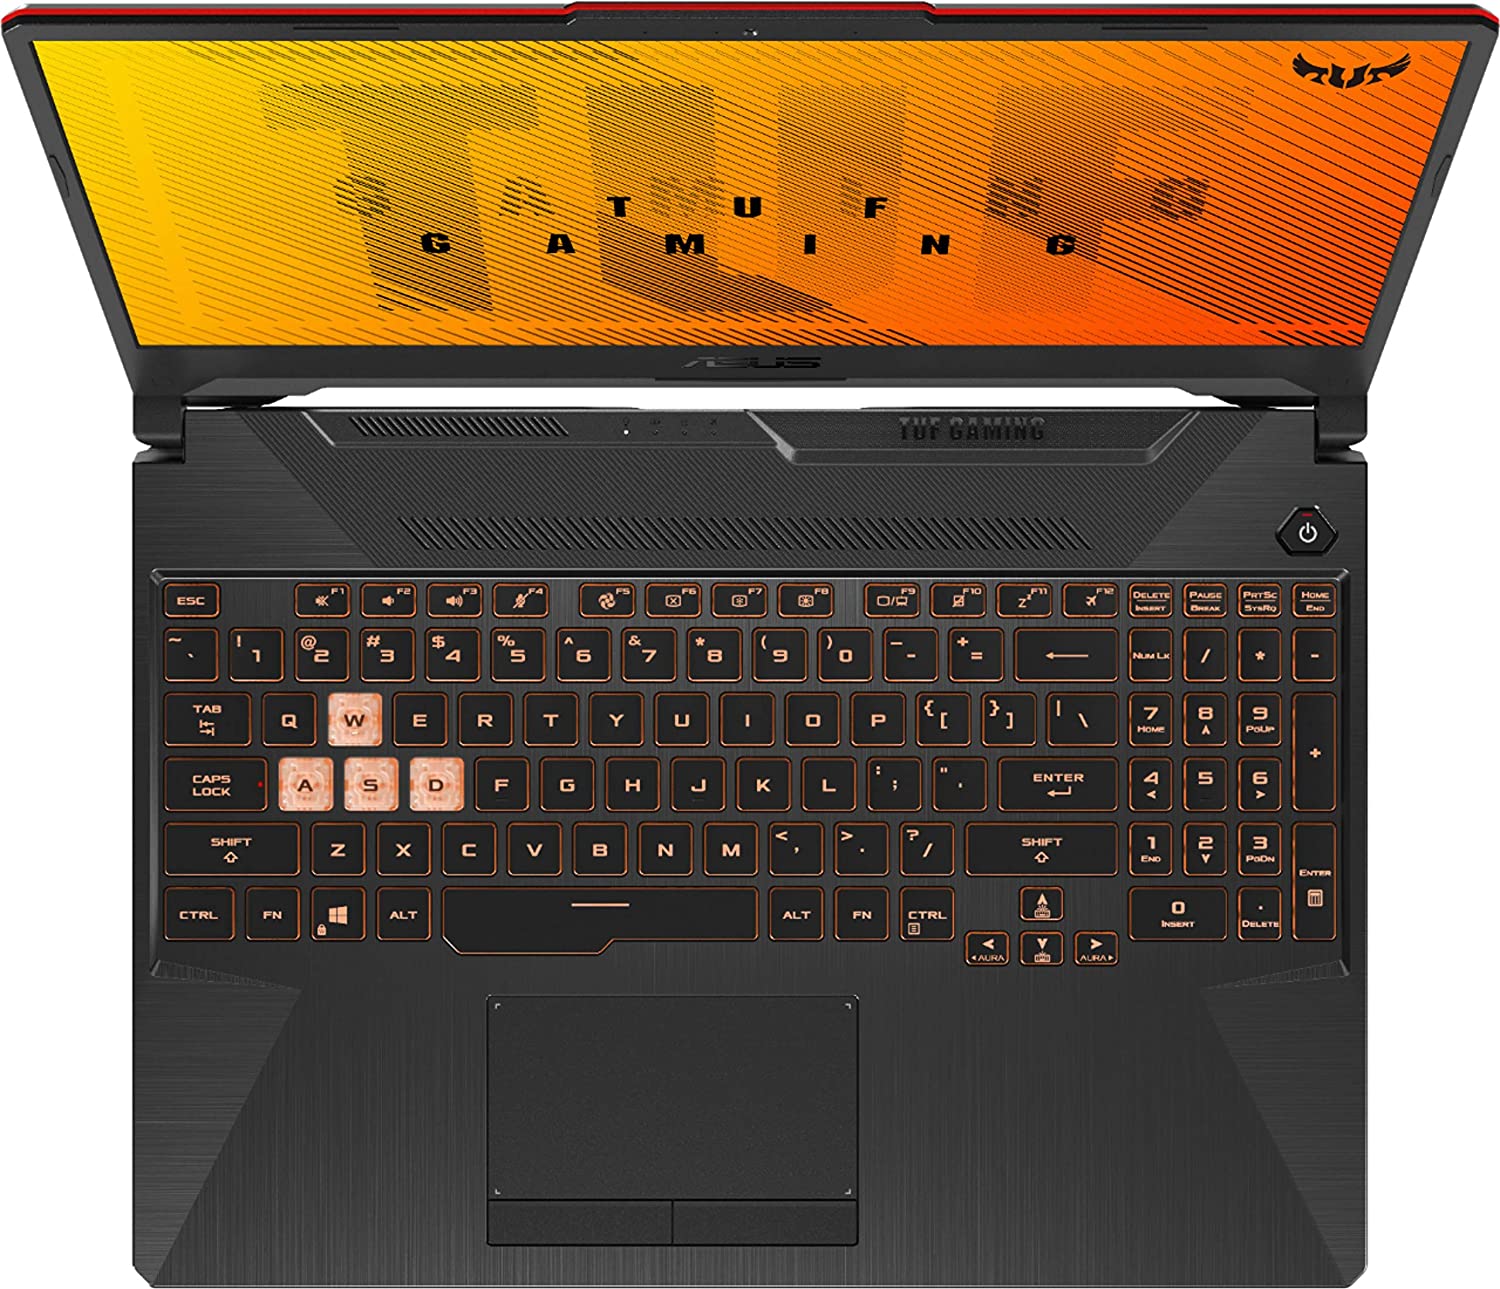 ASUS - TUF Gaming 15.6 Full HD Laptop Intel i5-10300H